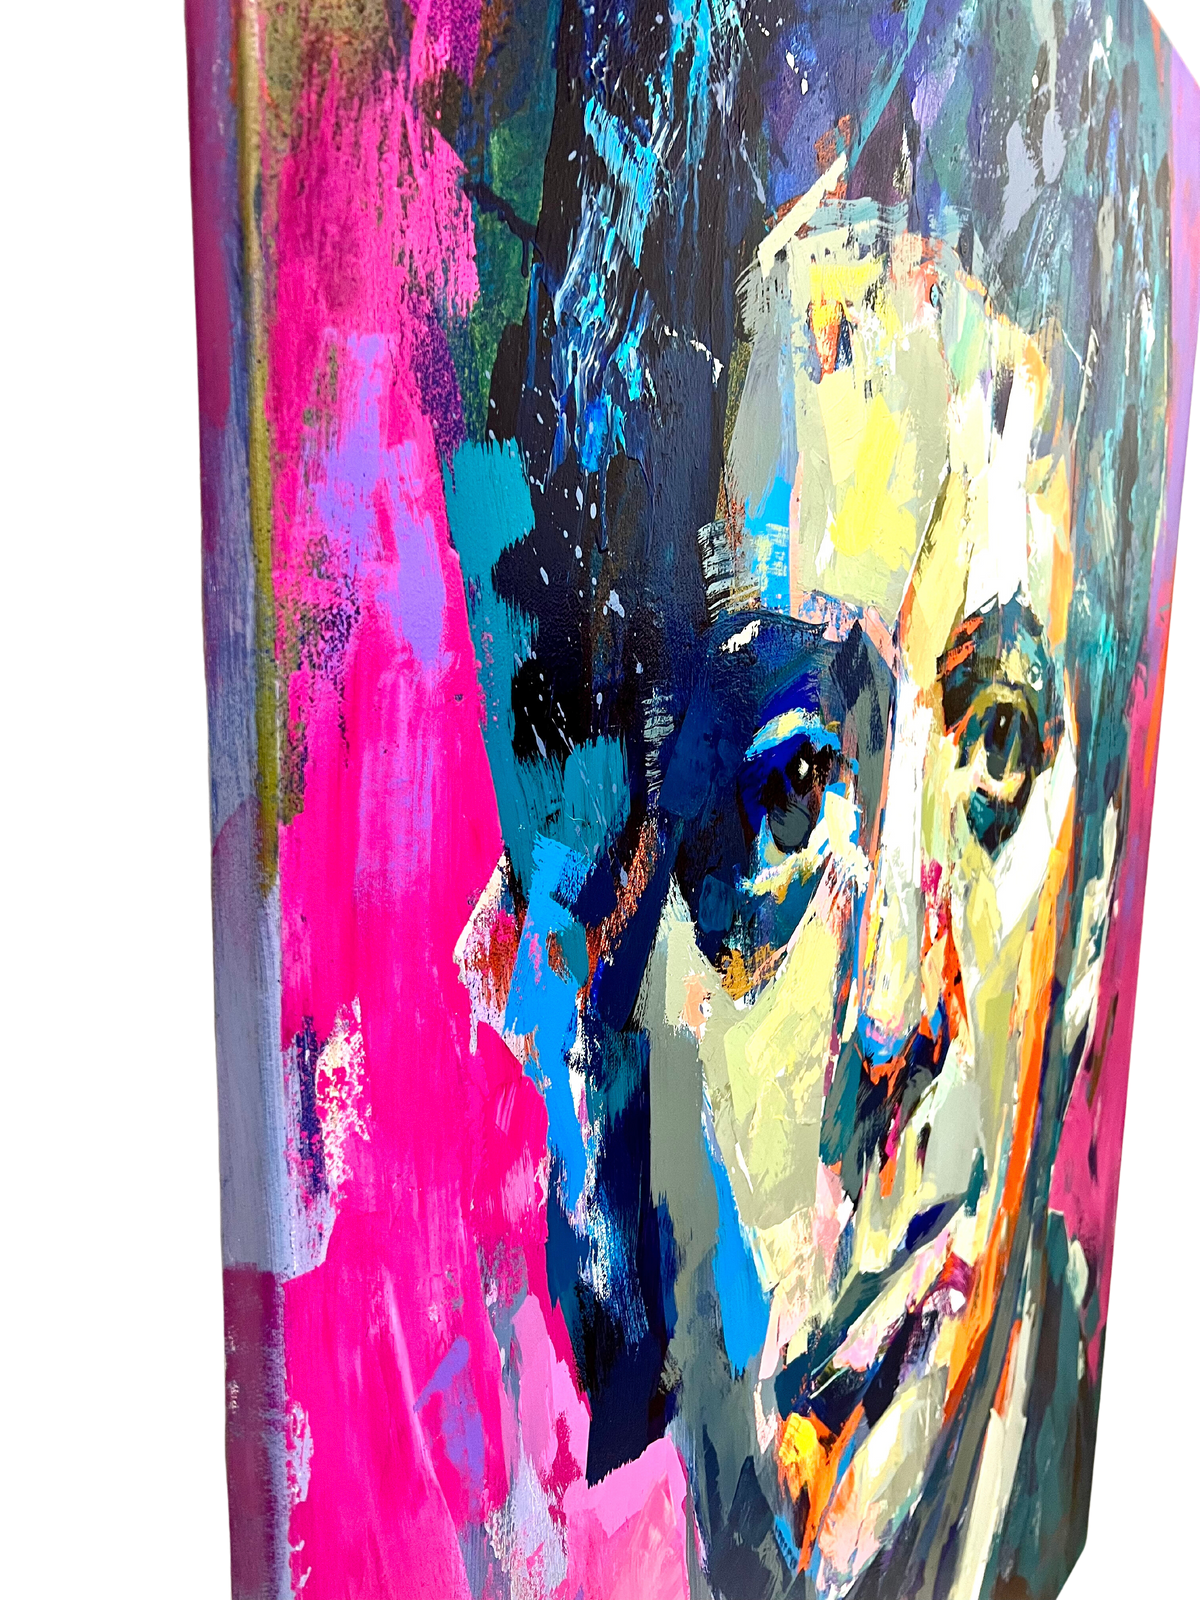 "Lou Reed" Akrylmålning på duk av Alberto Ramirez LEG, 150x110 cm